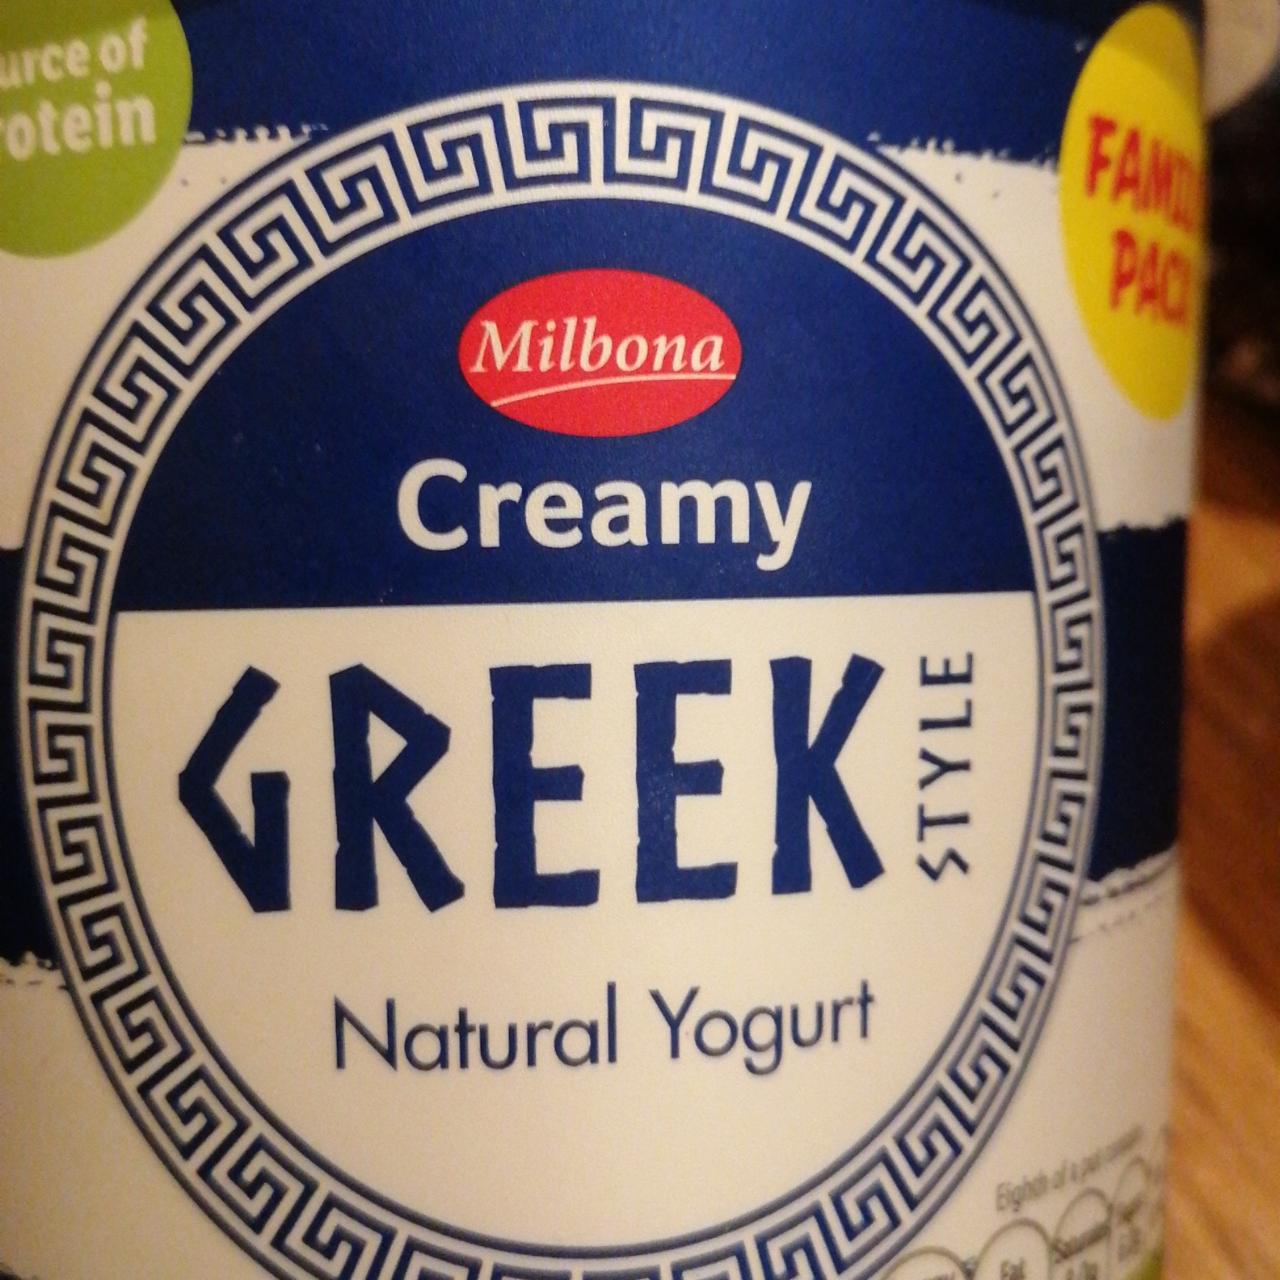 Fotografie - Creamy Greek style yogurt Milbona